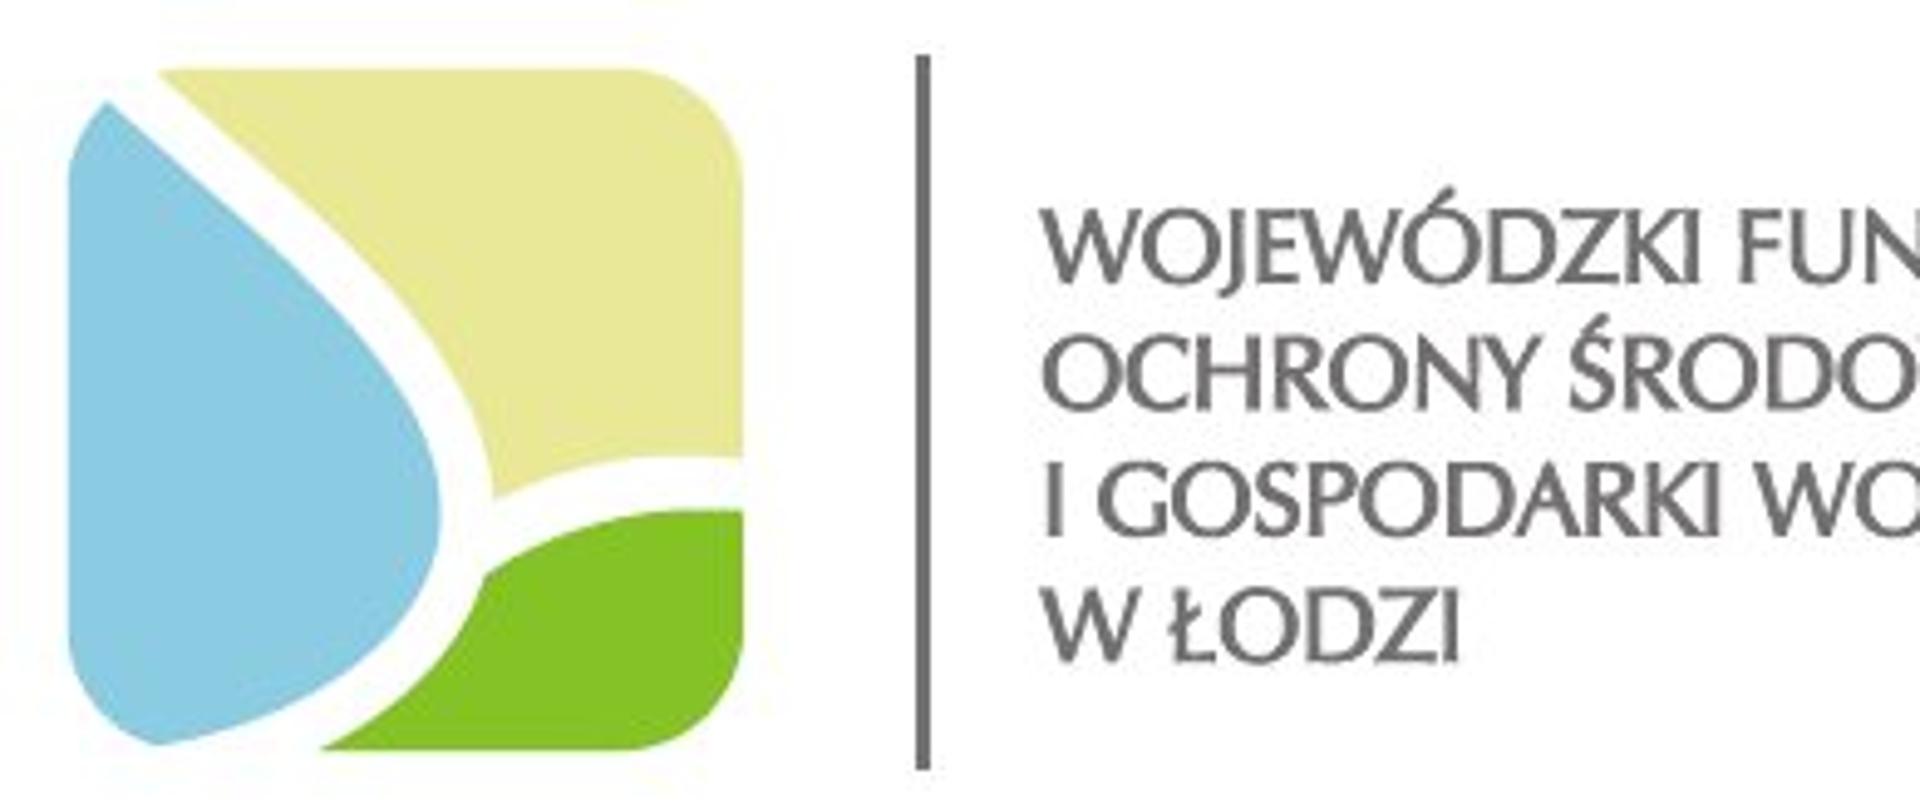 Kwadratowe kolorowe logo. Obok napis Wojewódzki Fundusz Ochrony Środowiska i Gospodarki Wodnej w Łodzi